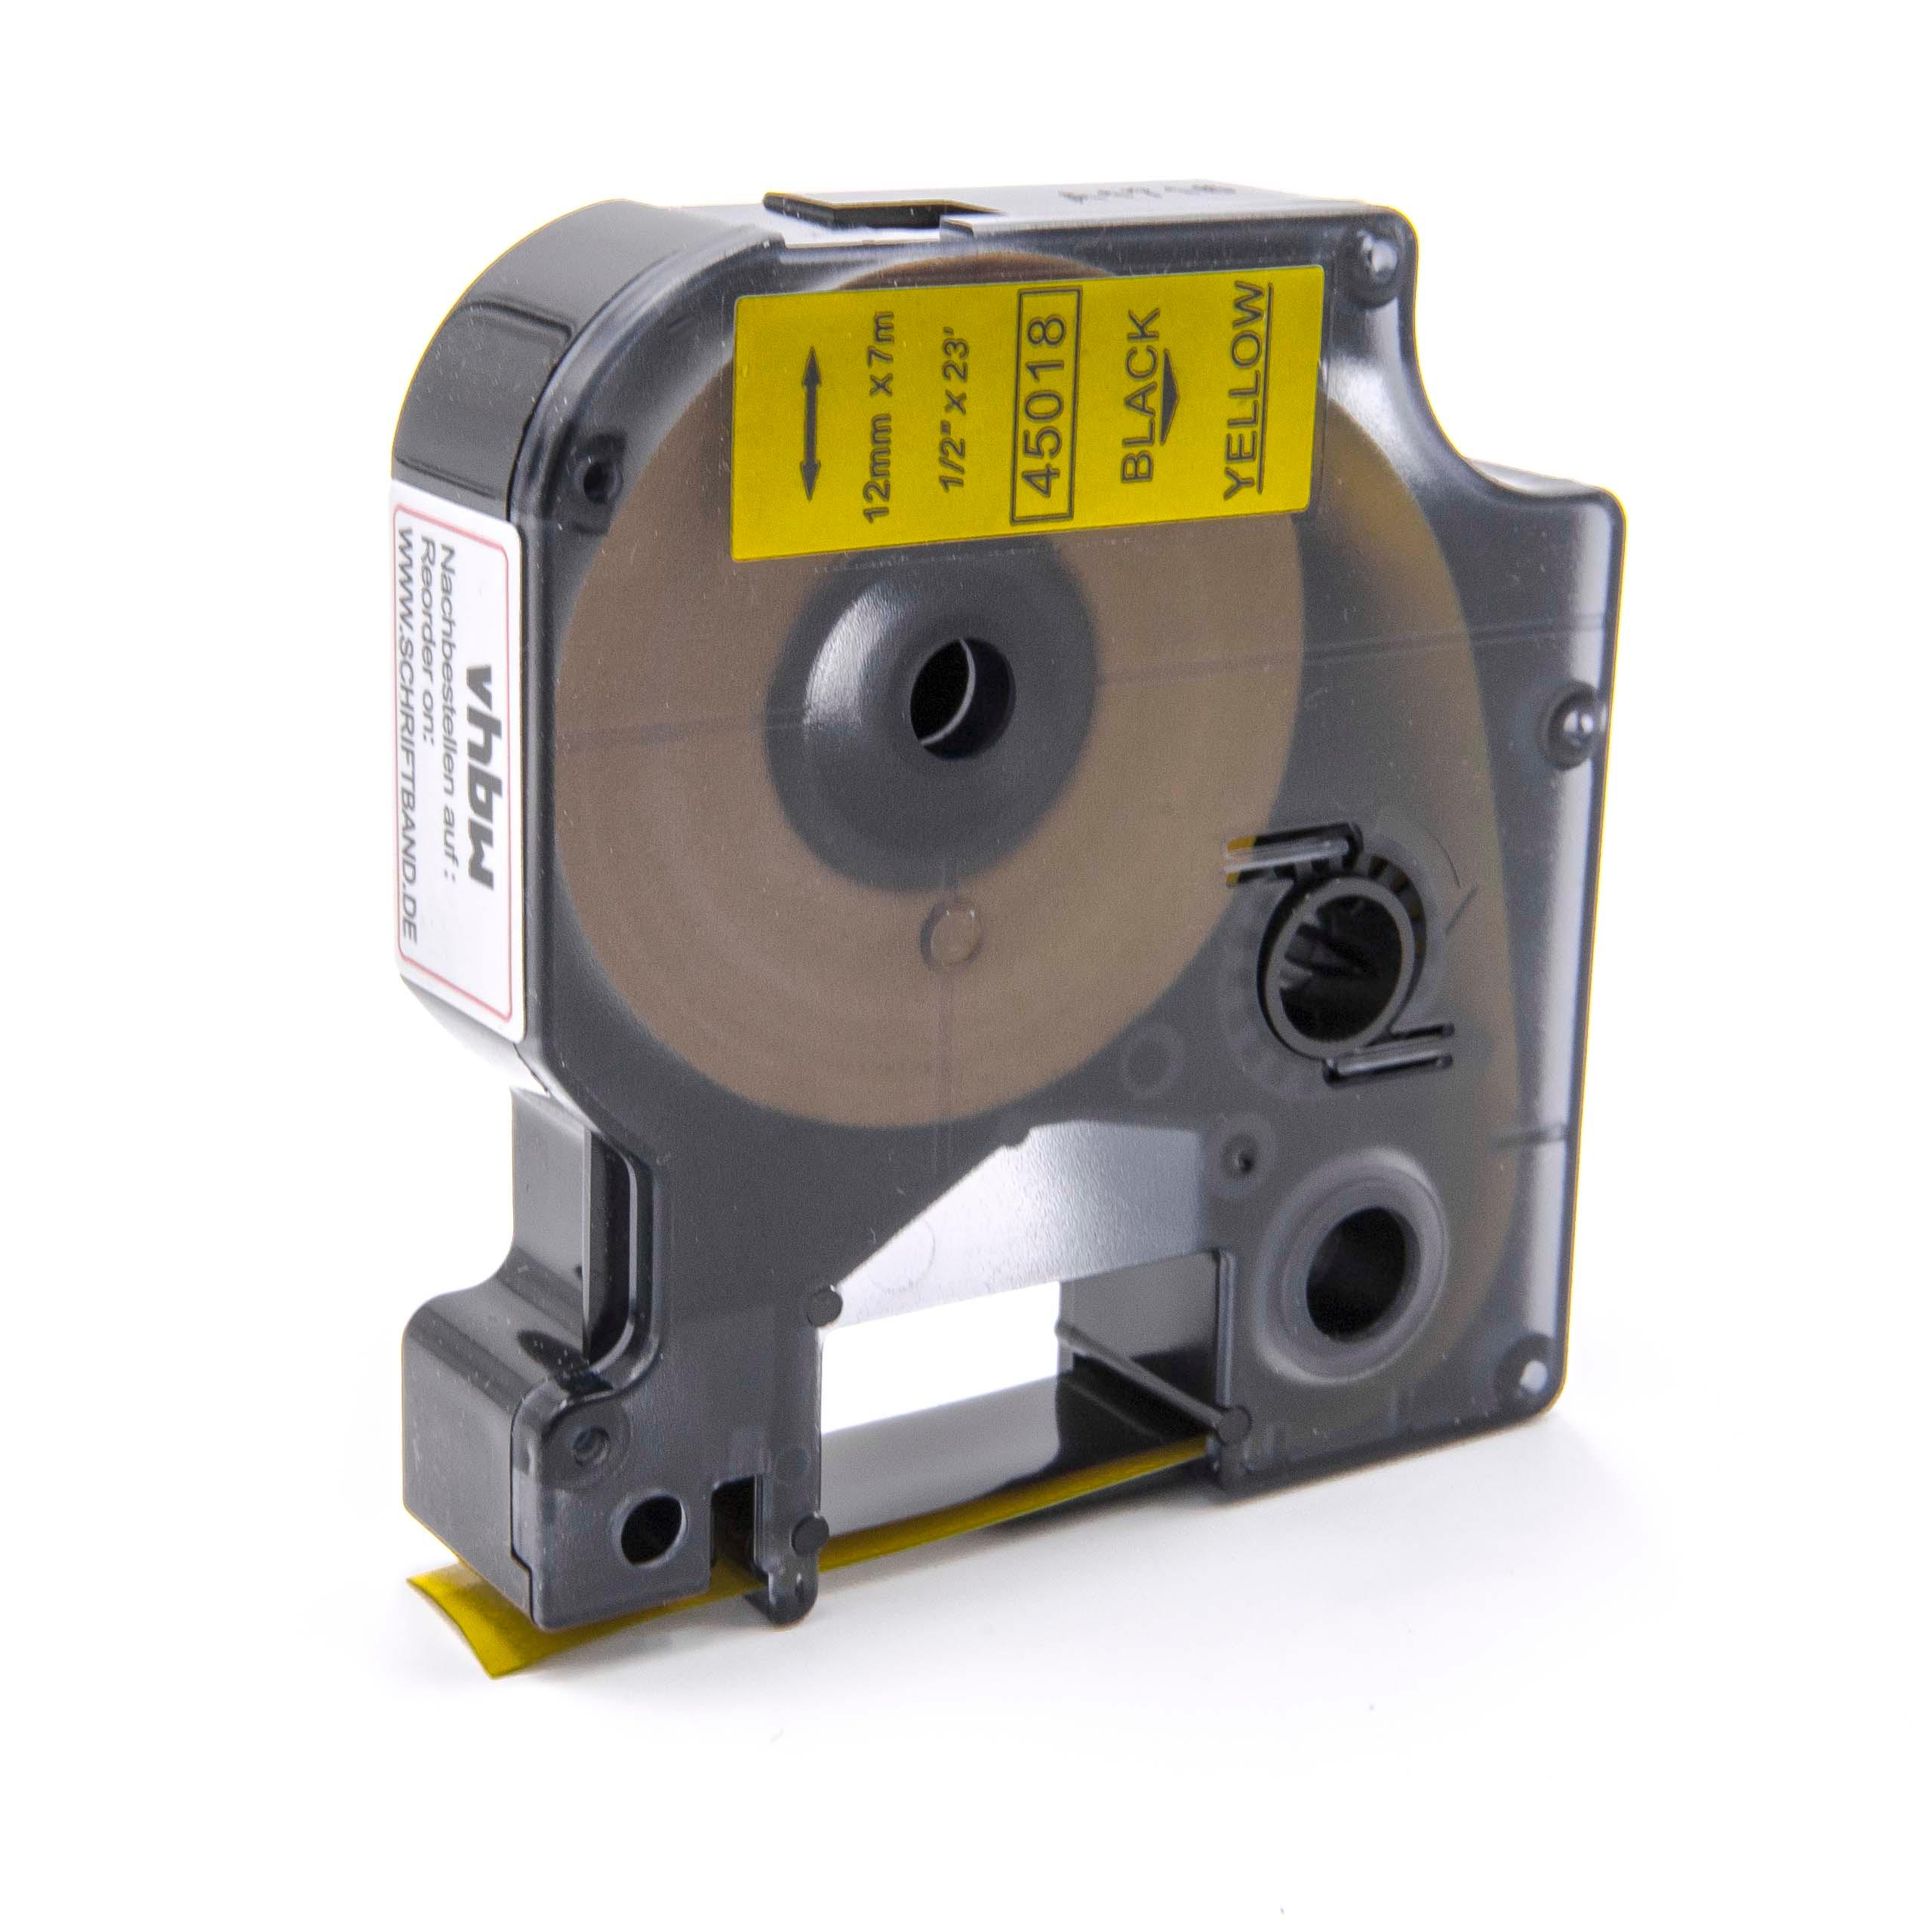 Cassetta nastro sostituisce Dymo 45018, D1 per etichettatrice Dymo 12mm nero su giallo